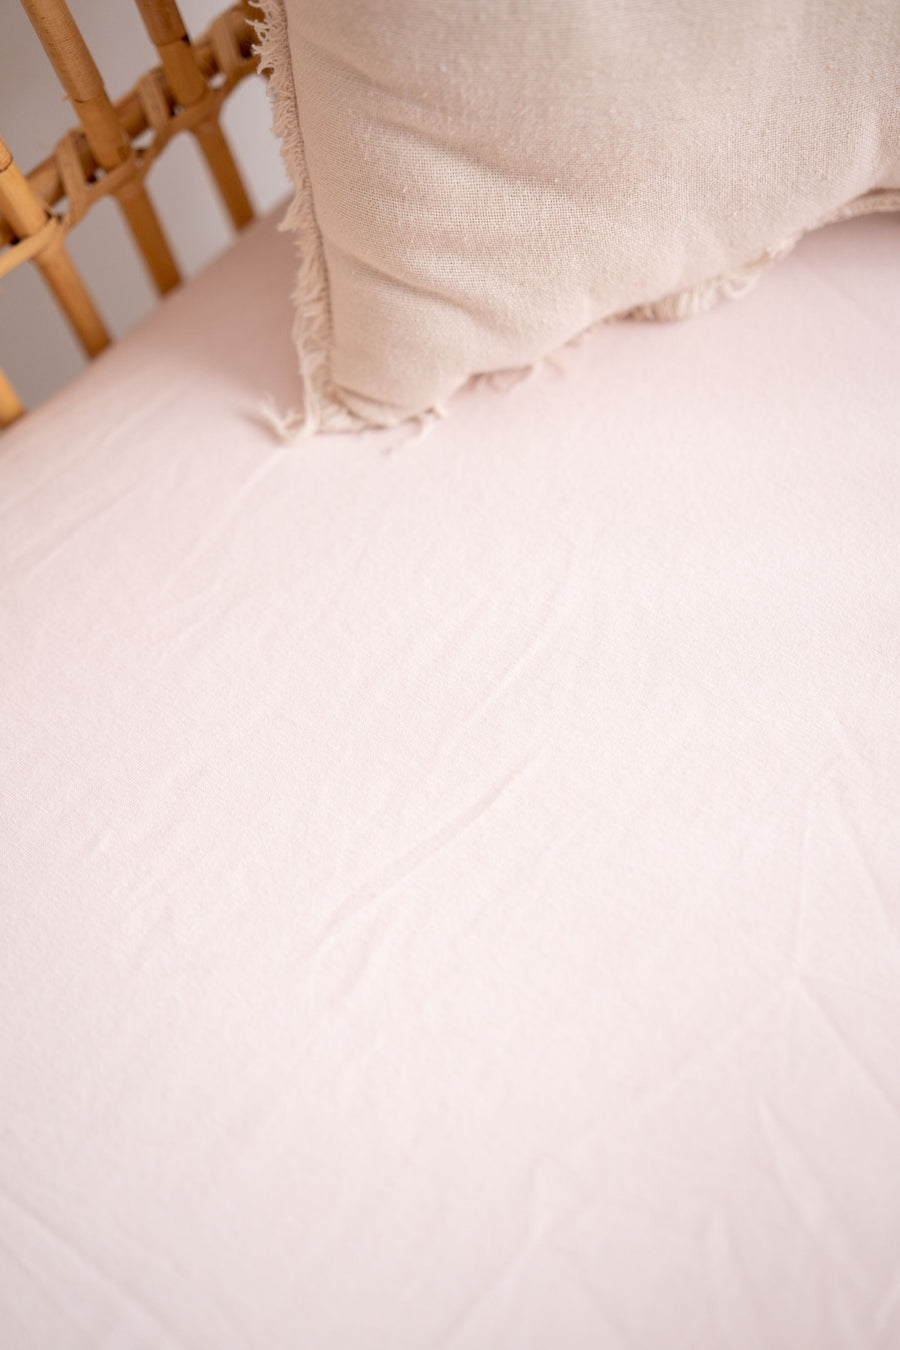 Pretty Pink - Waterproof Single Bed Sheet